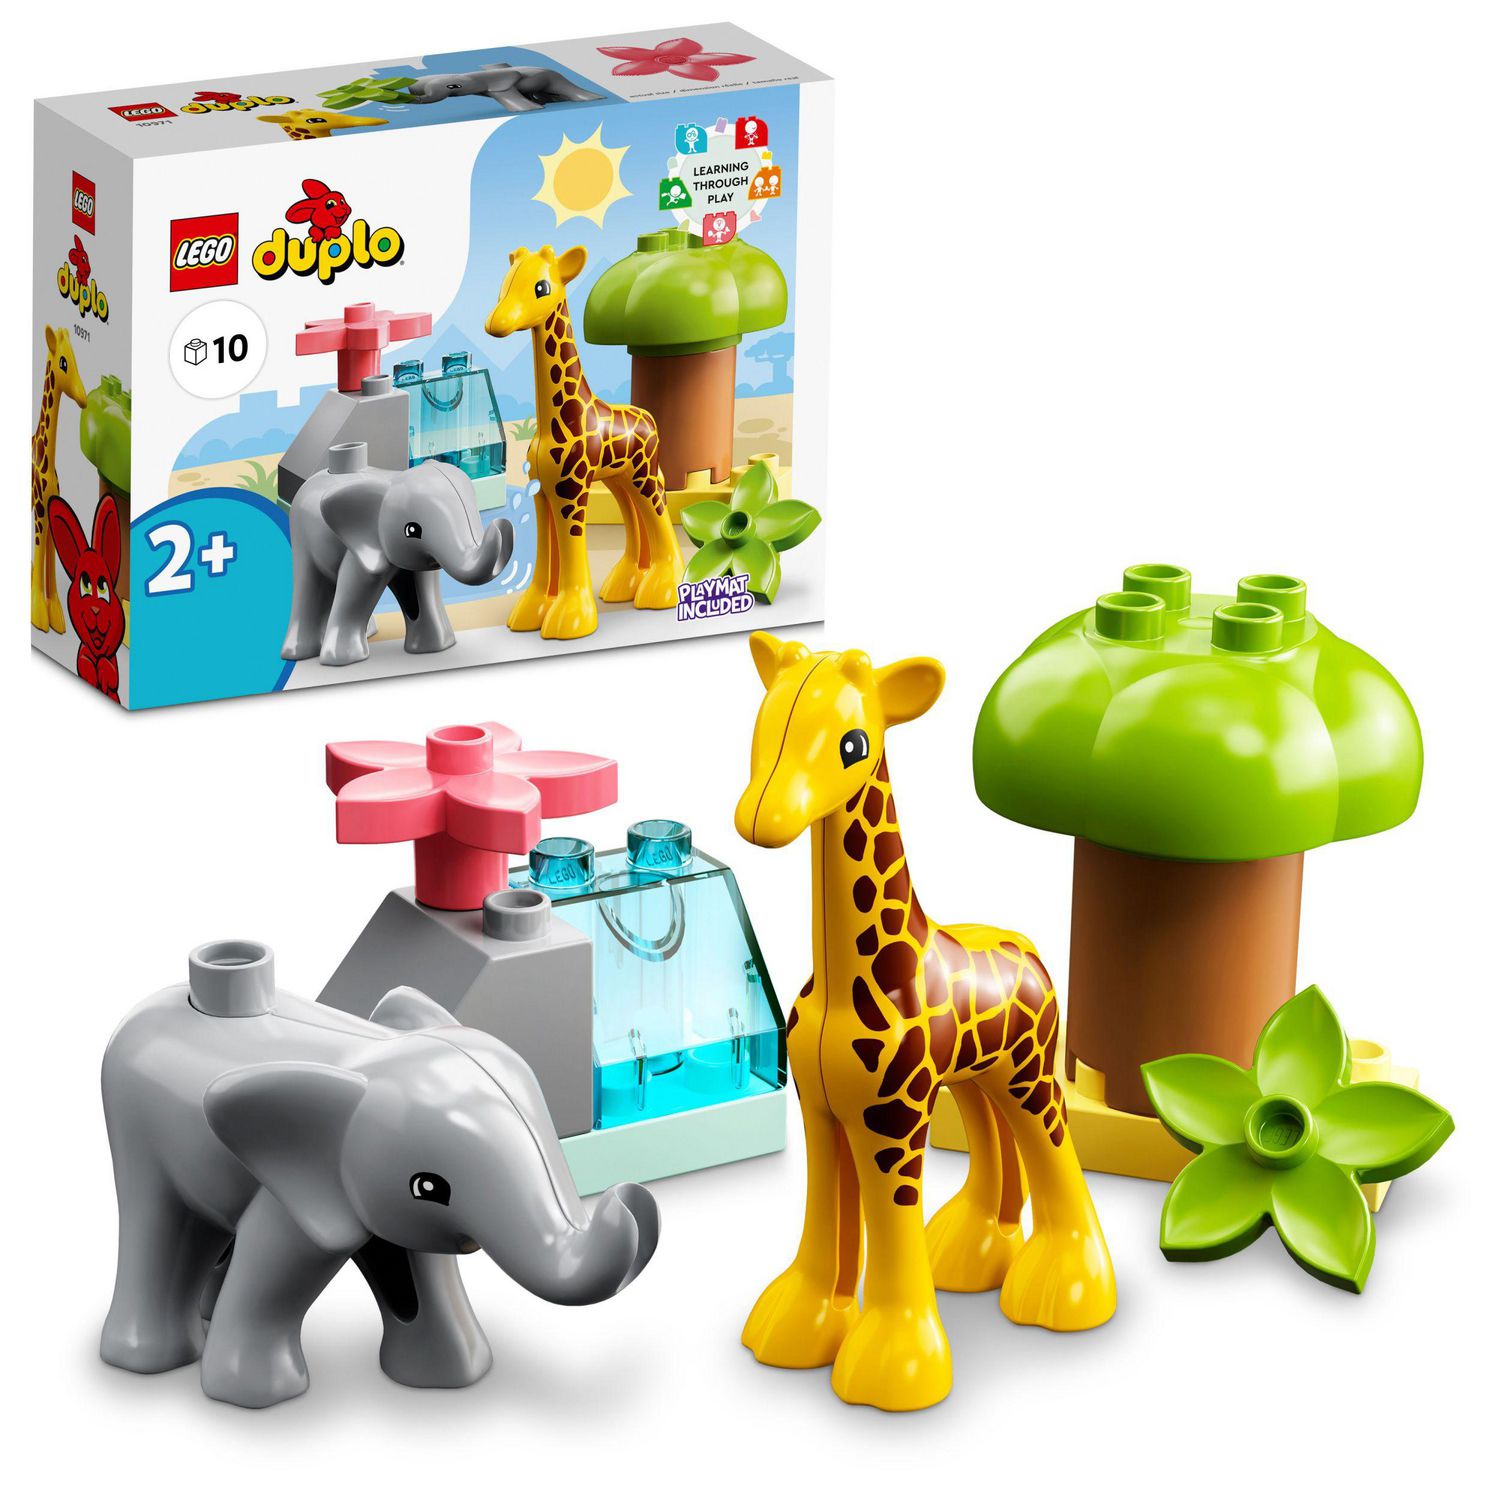 LEGO 10949 duplo town les animaux de la ferme jouet pour les bébés